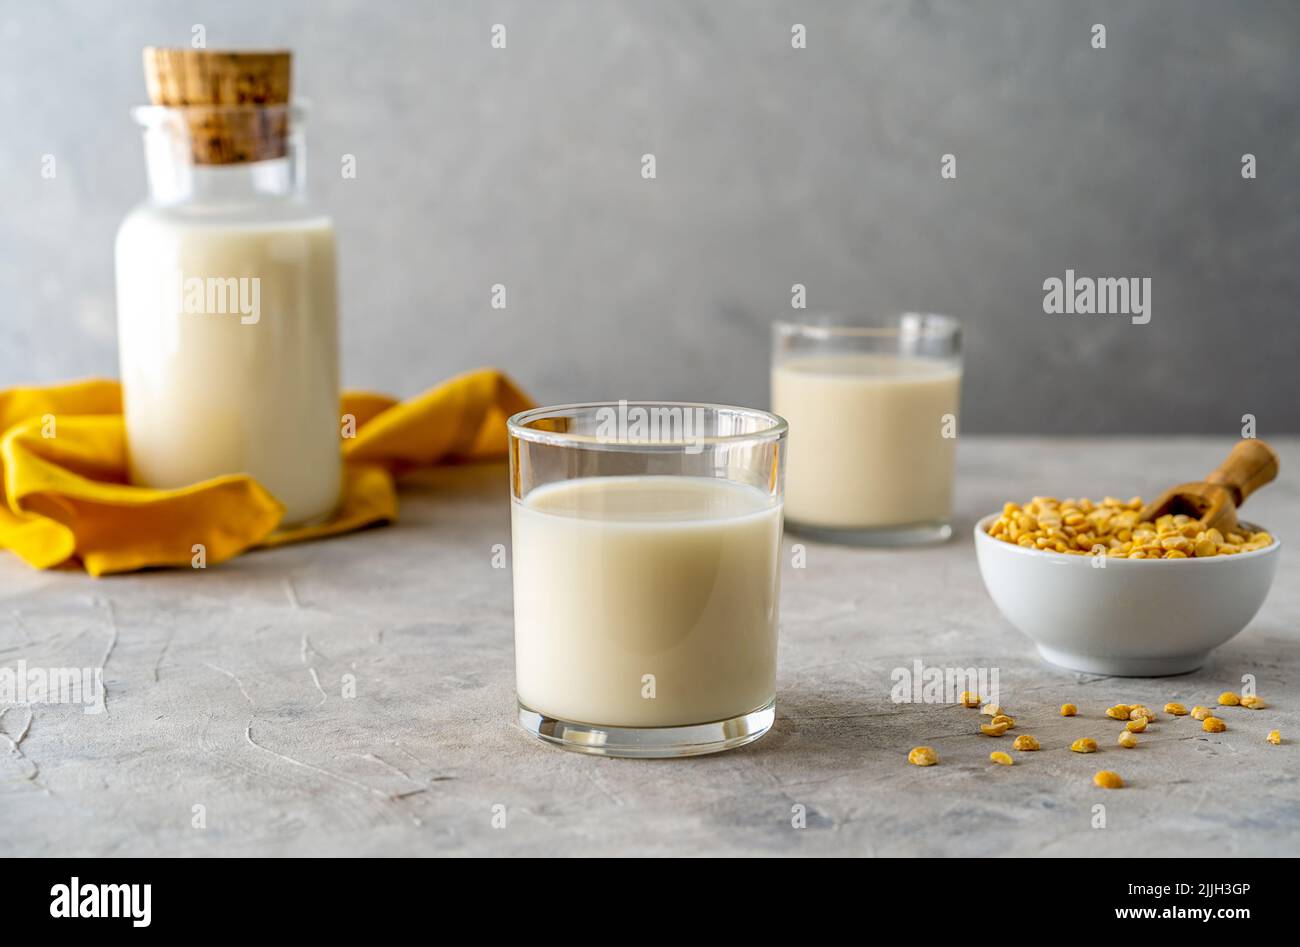 Vegane, gesunde Erbsen-Milch in Glasflasche und zwei Gläsern, betonierter Hintergrund, Erbsen-Körner, gelbe Serviette. Speicherplatz kopieren Stockfoto